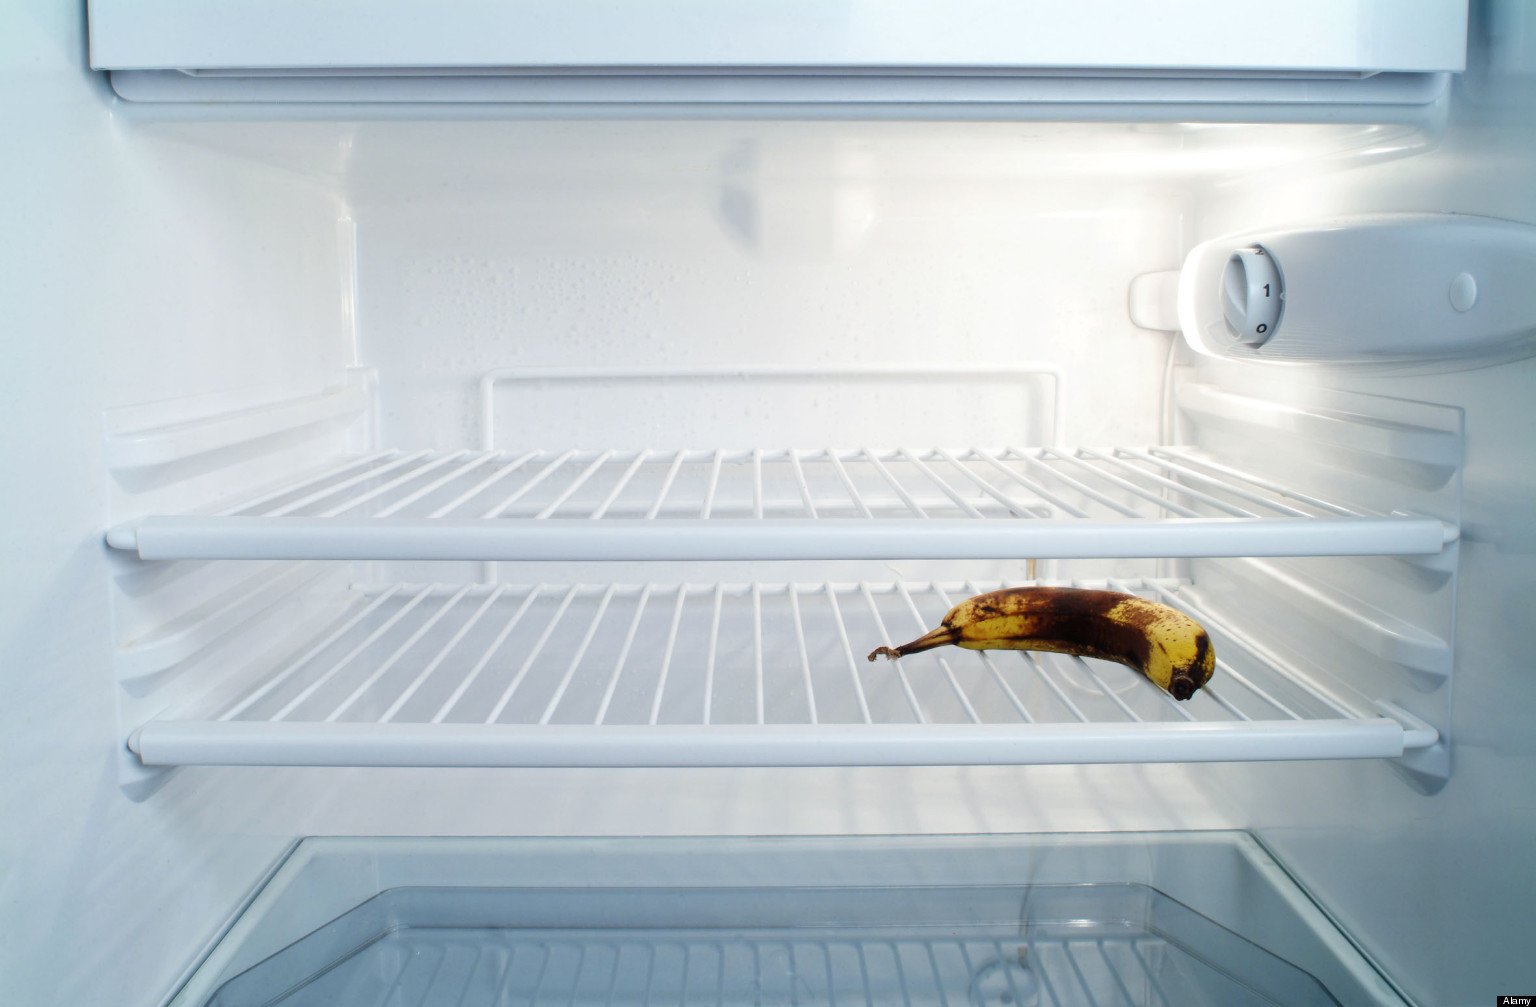 empty refrigerator